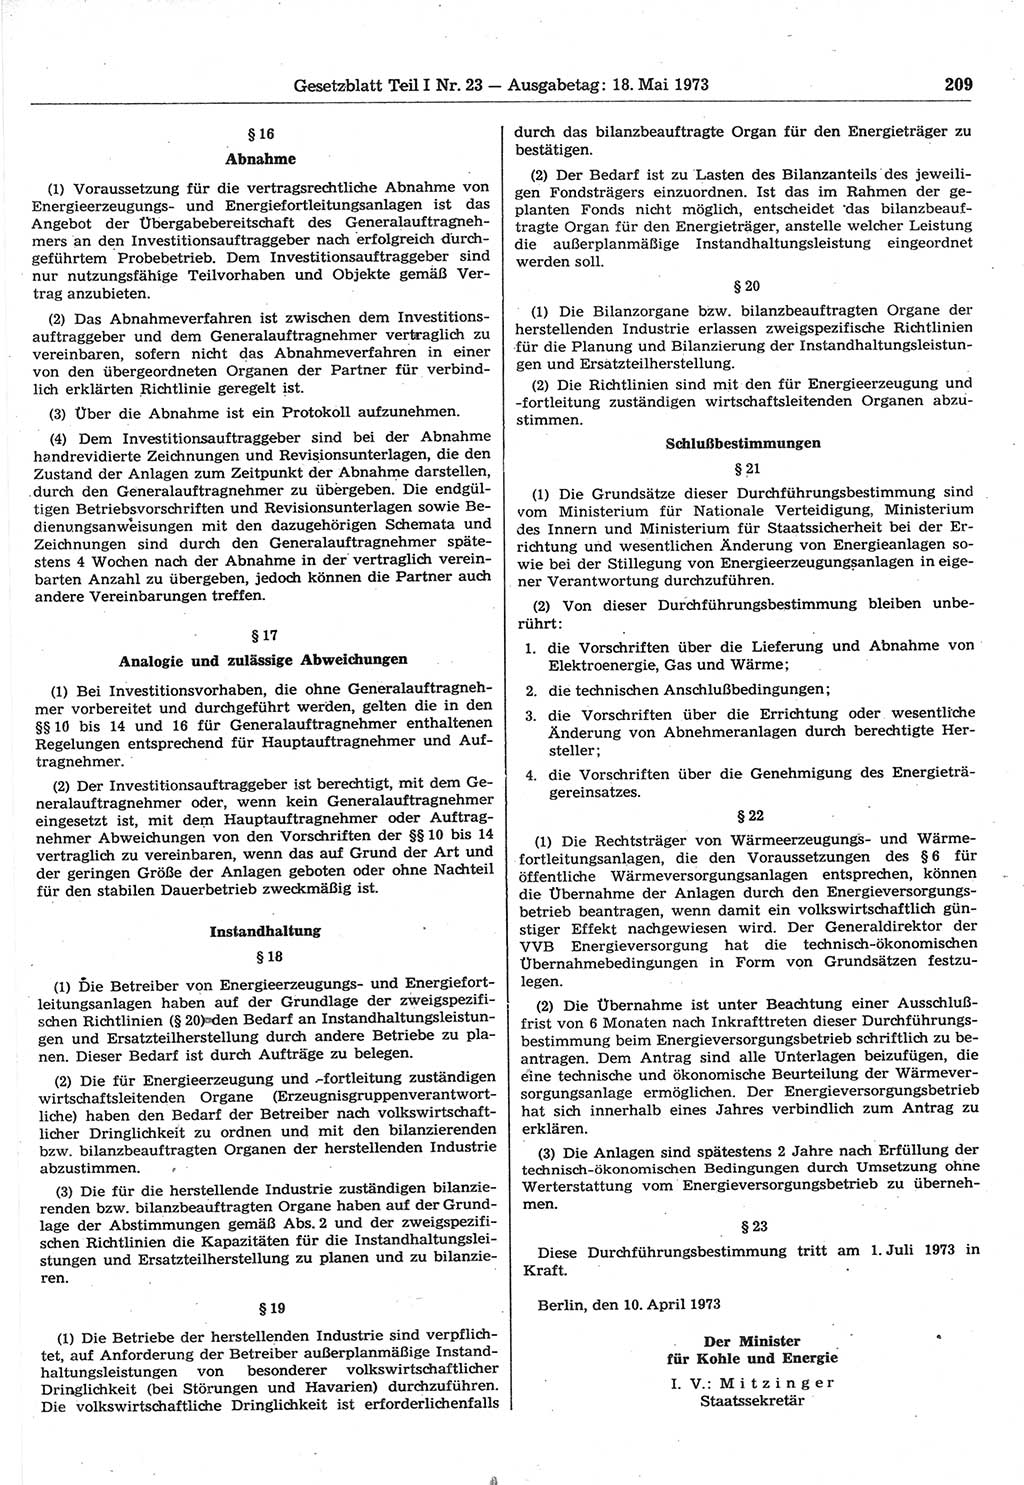 Gesetzblatt (GBl.) der Deutschen Demokratischen Republik (DDR) Teil Ⅰ 1973, Seite 209 (GBl. DDR Ⅰ 1973, S. 209)